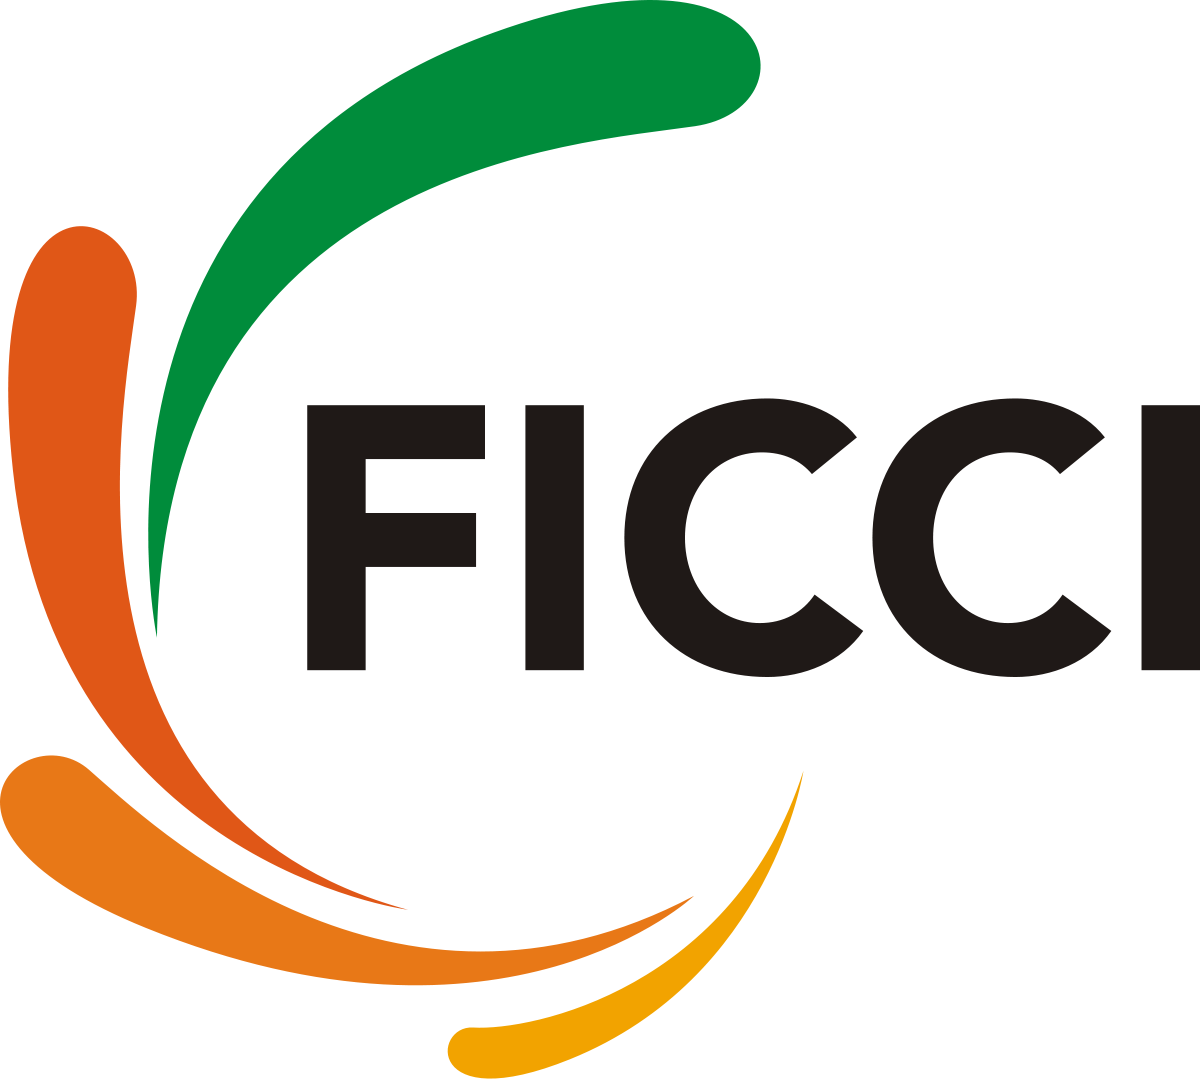 1200px-FICCI_logo.svg